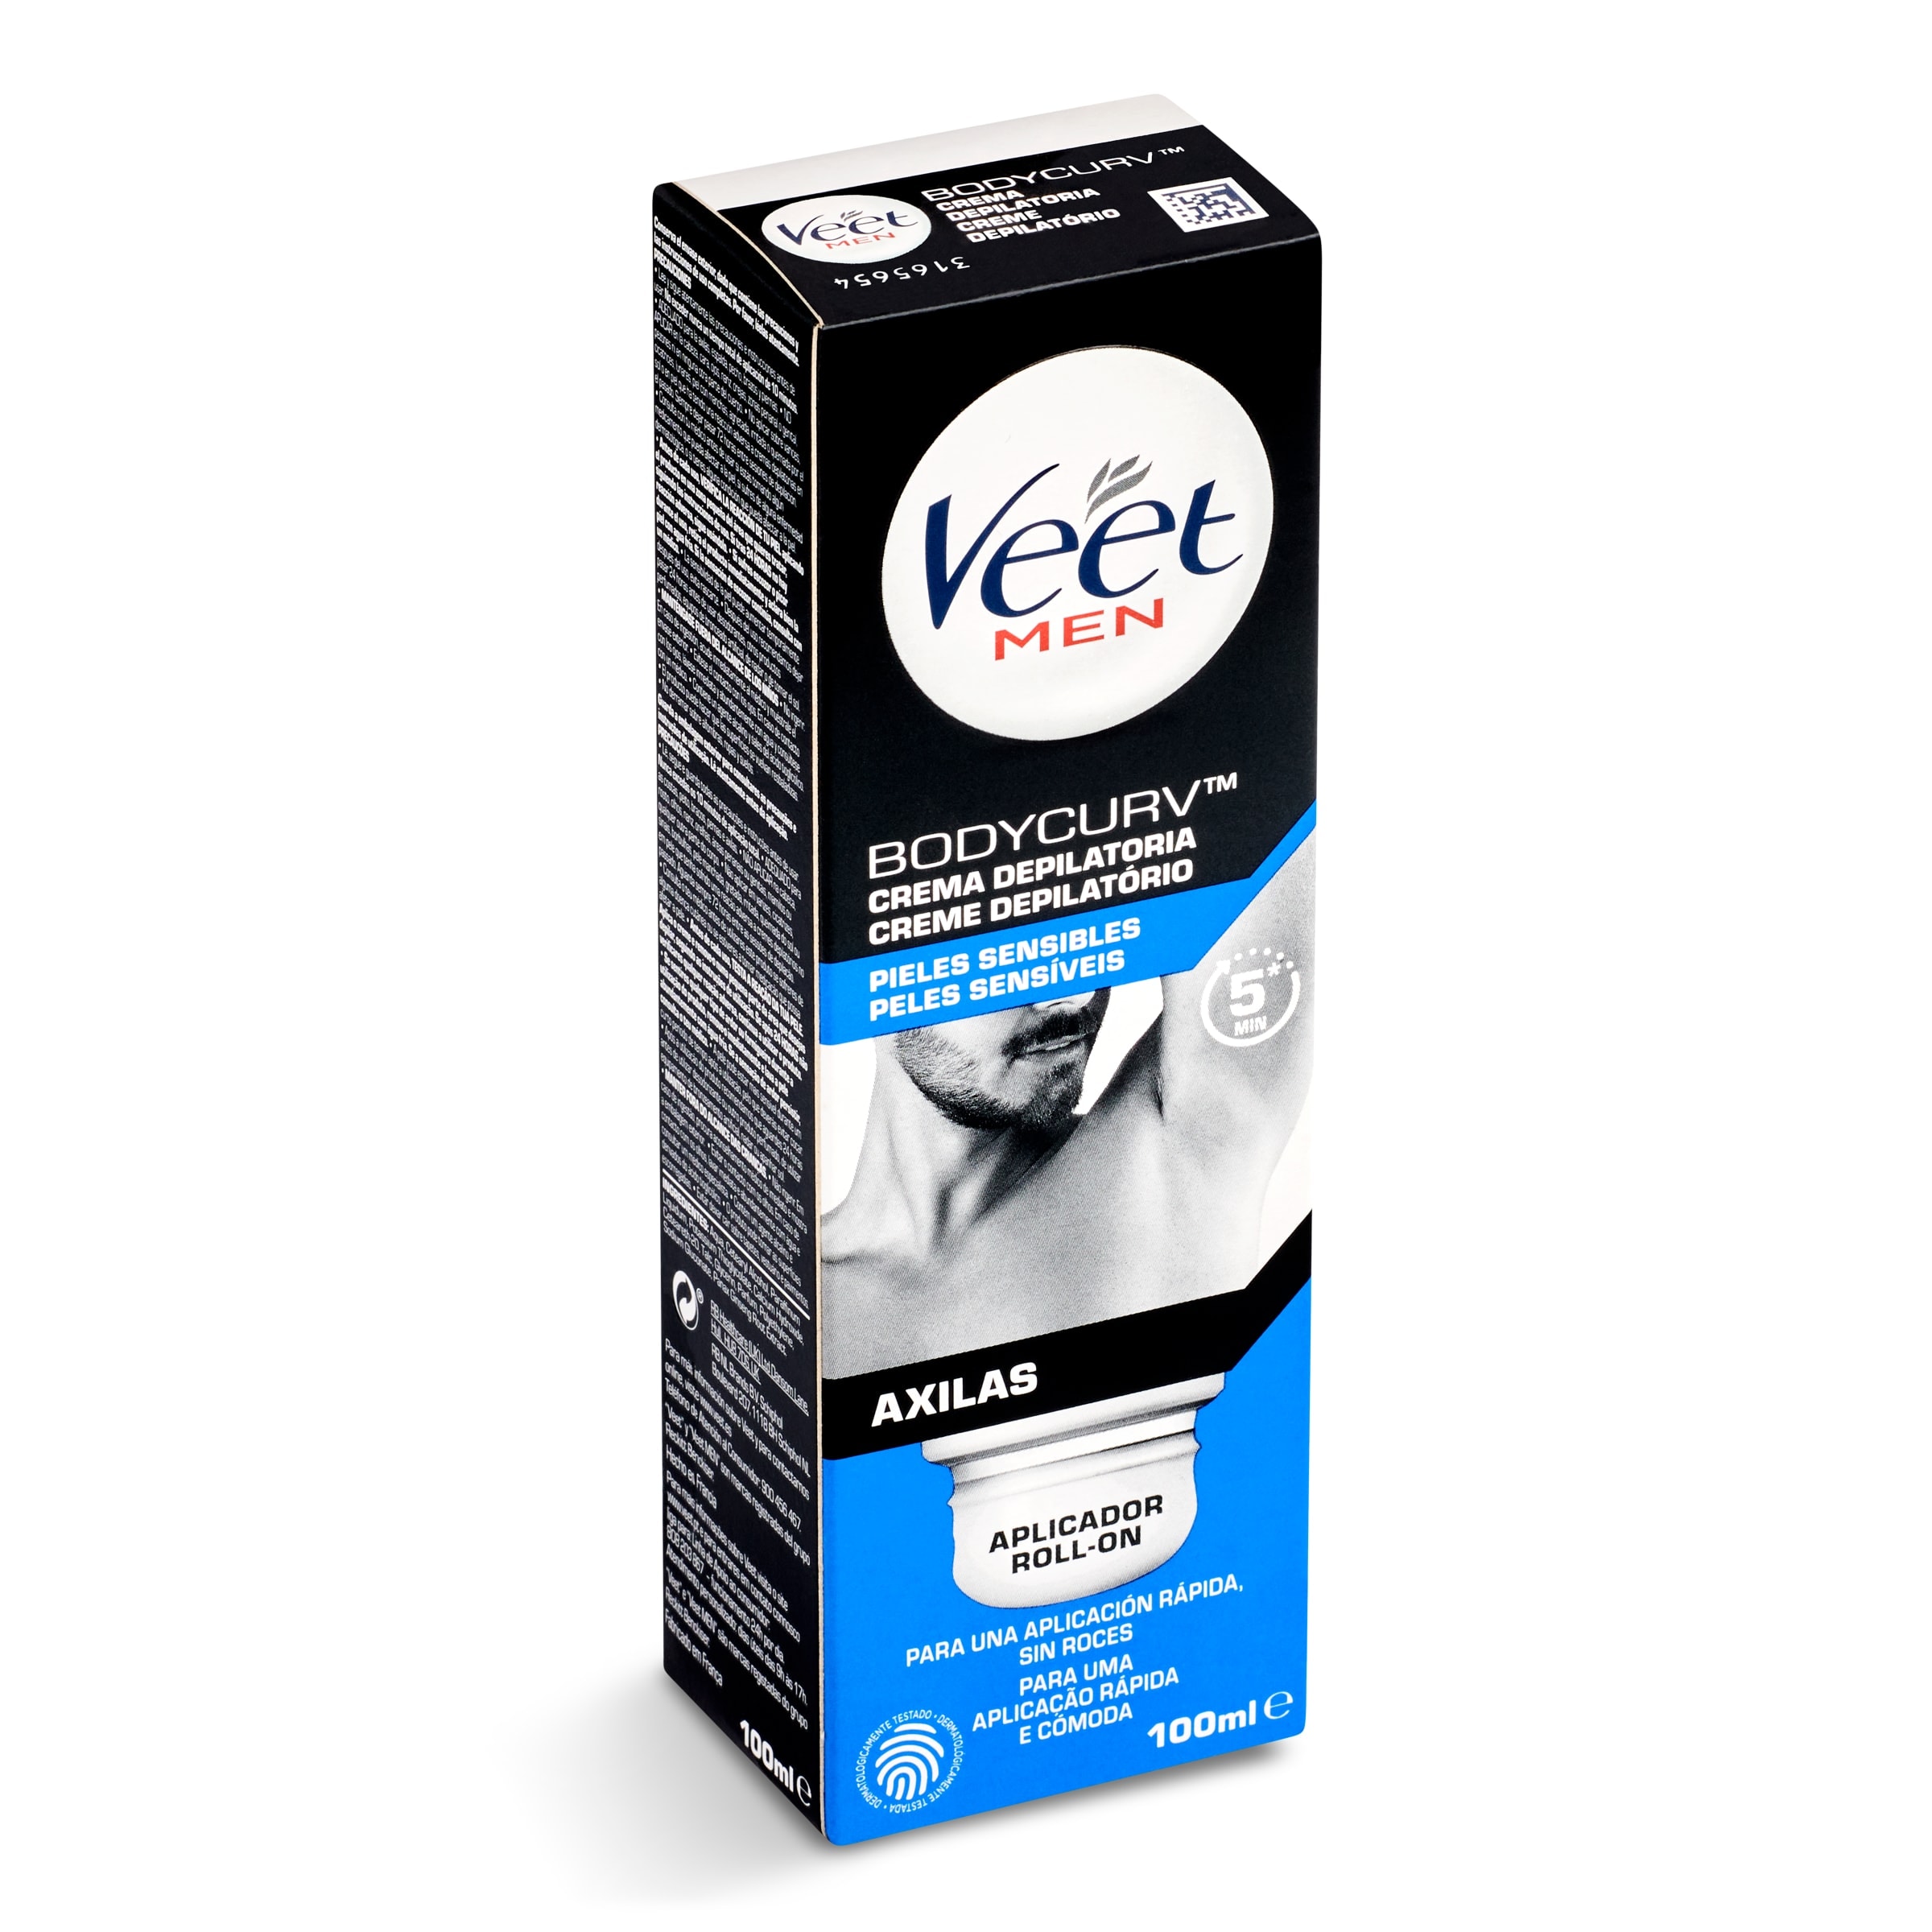 Crema depilatoria para axilas pieles sensibles Veet tubo 100 ml -  Supermercados DIA